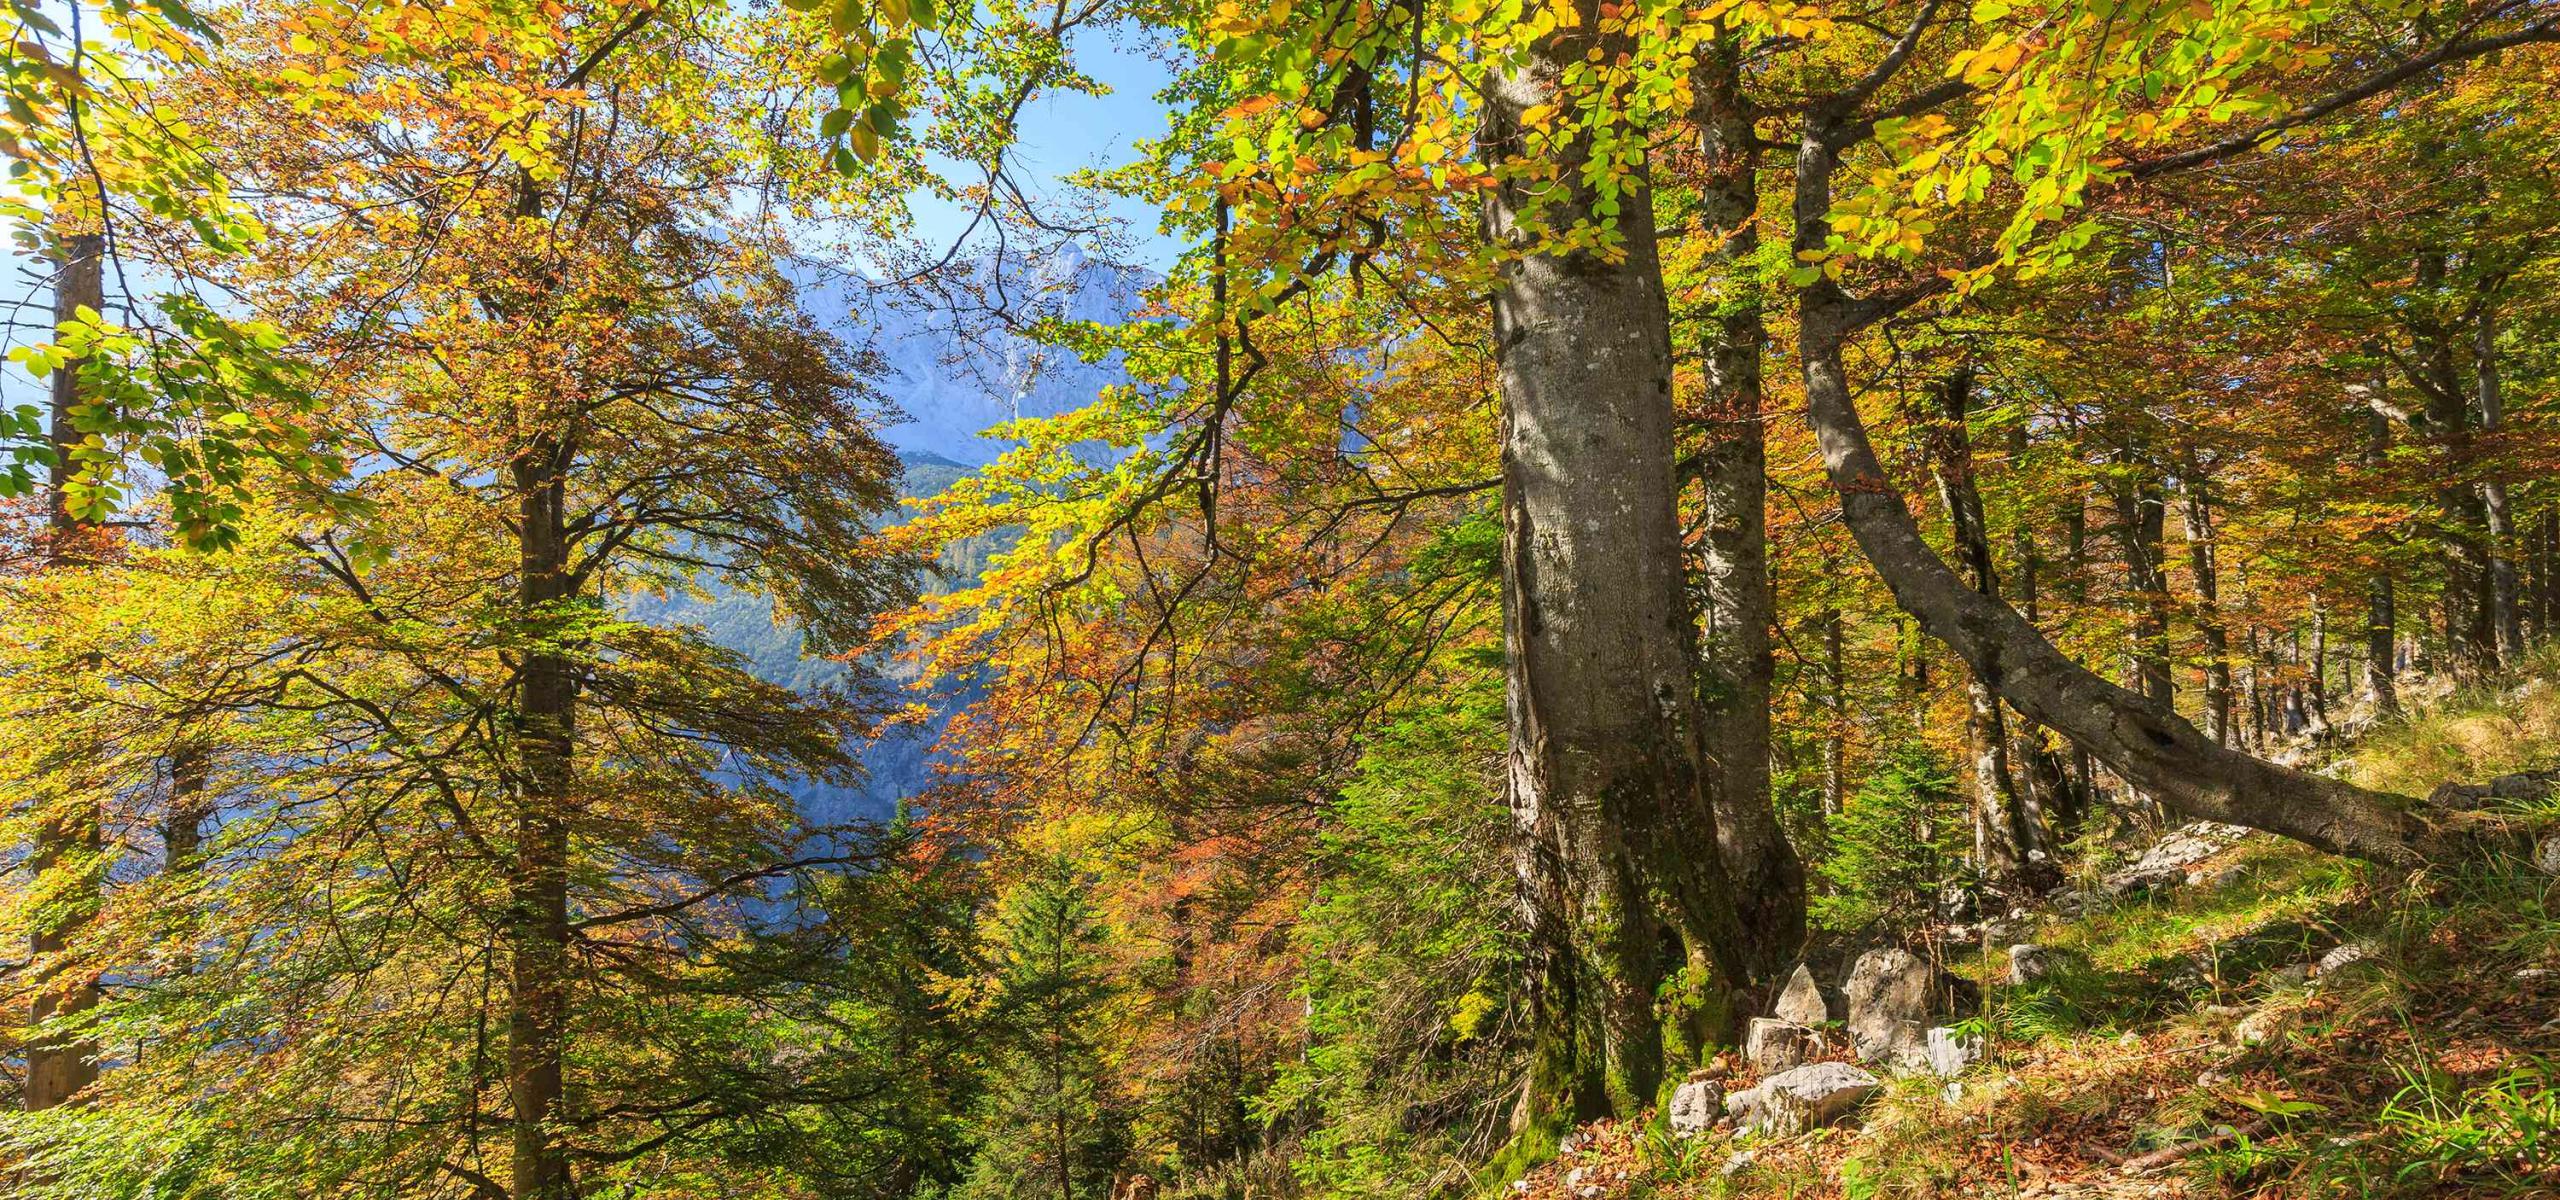 Mohutné, podzimně zbarvené buky stojí na úbočí hory.